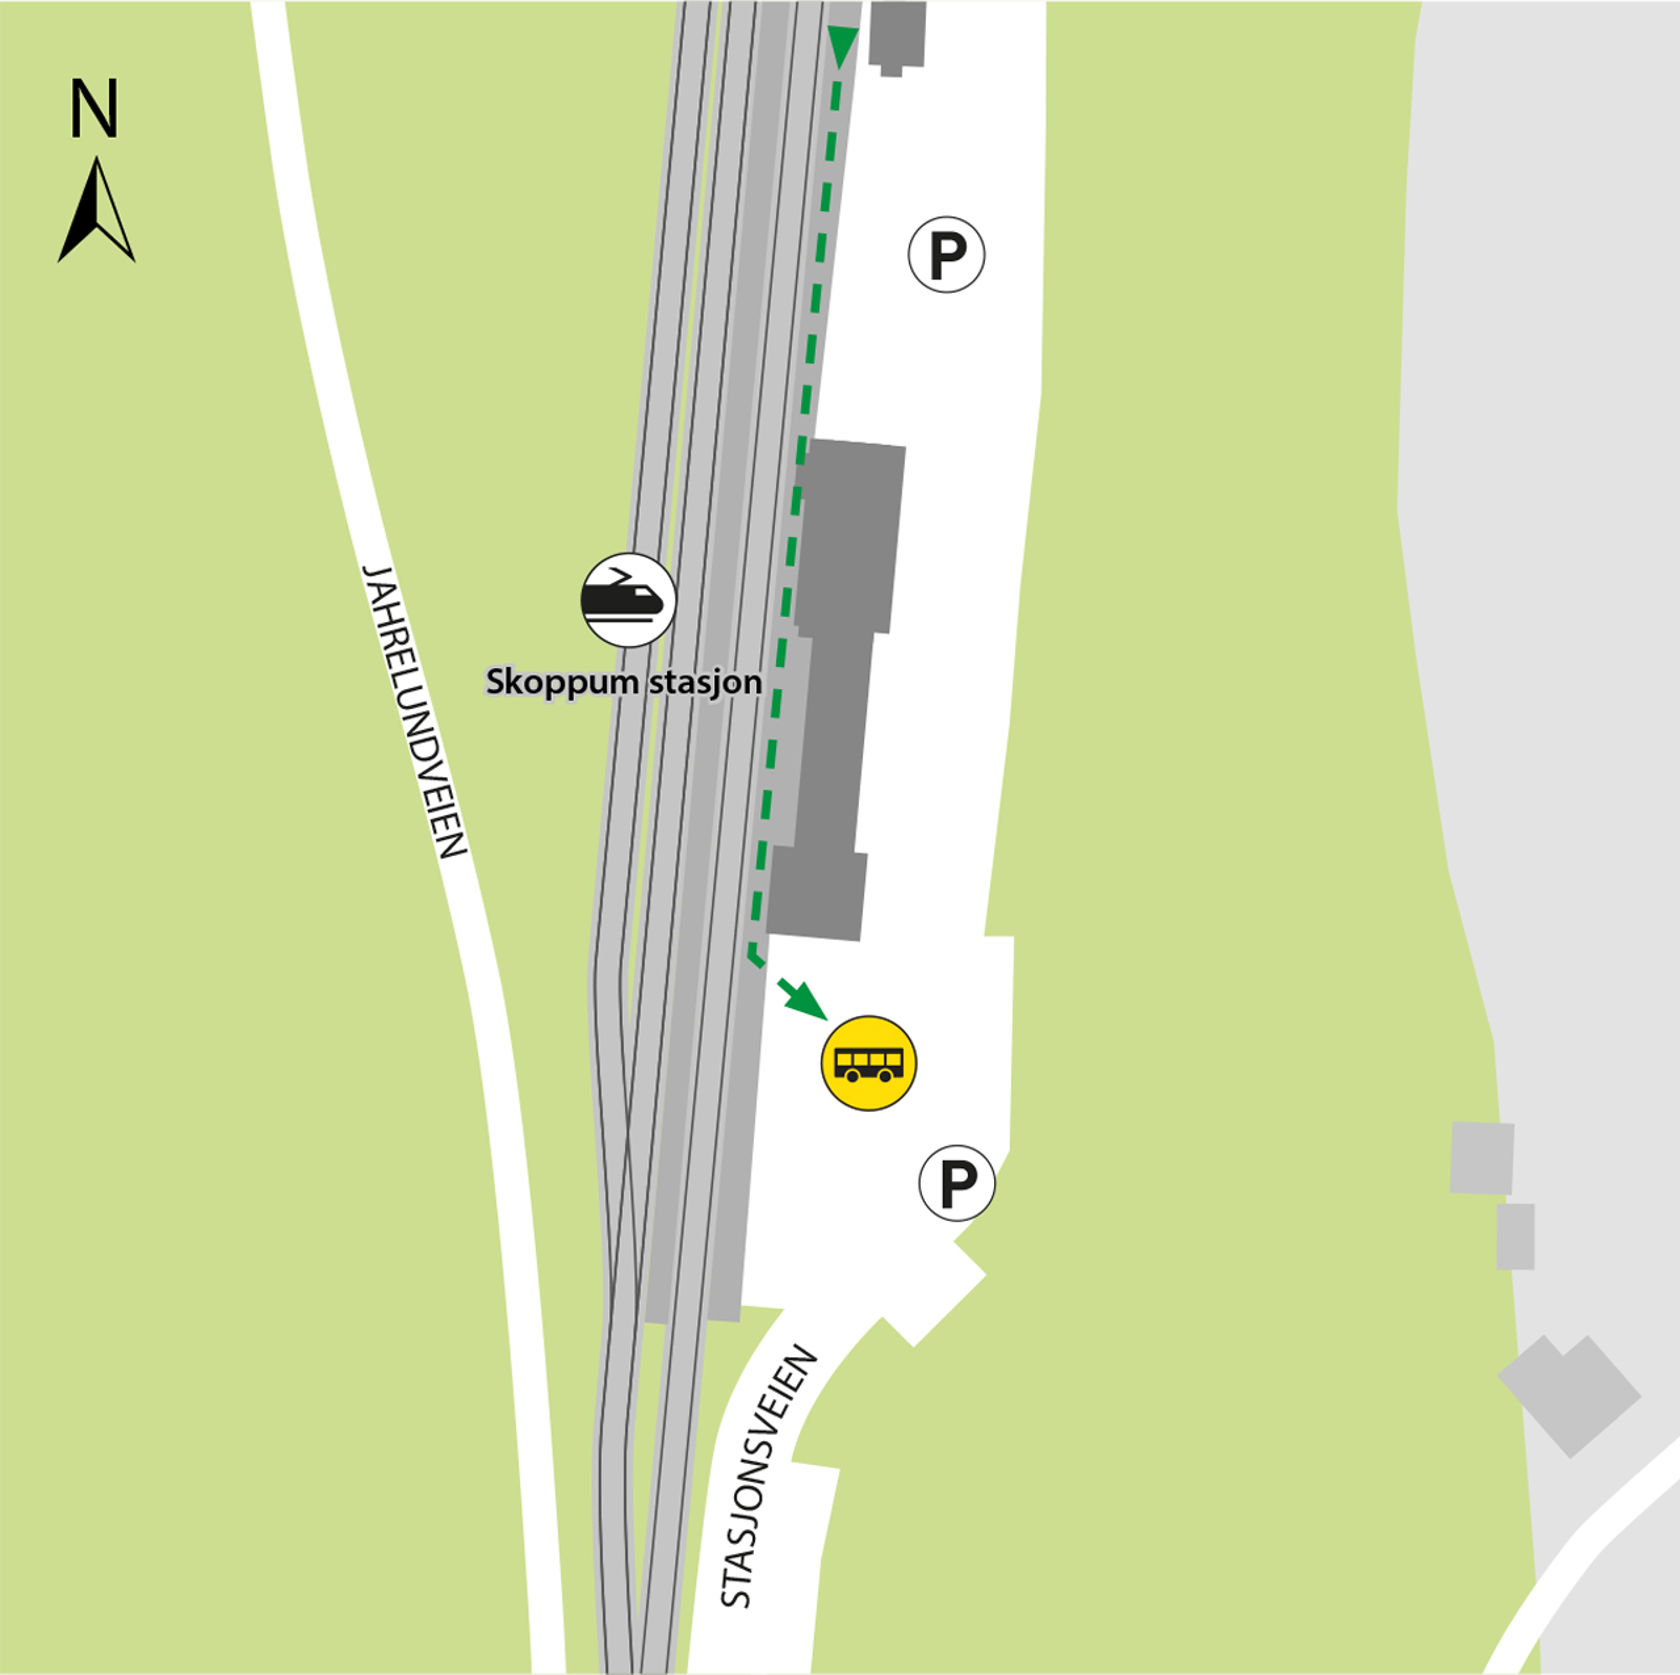 Kartet viser at bussene kjører fra bussholdeplassen Skoppum stasjon. 